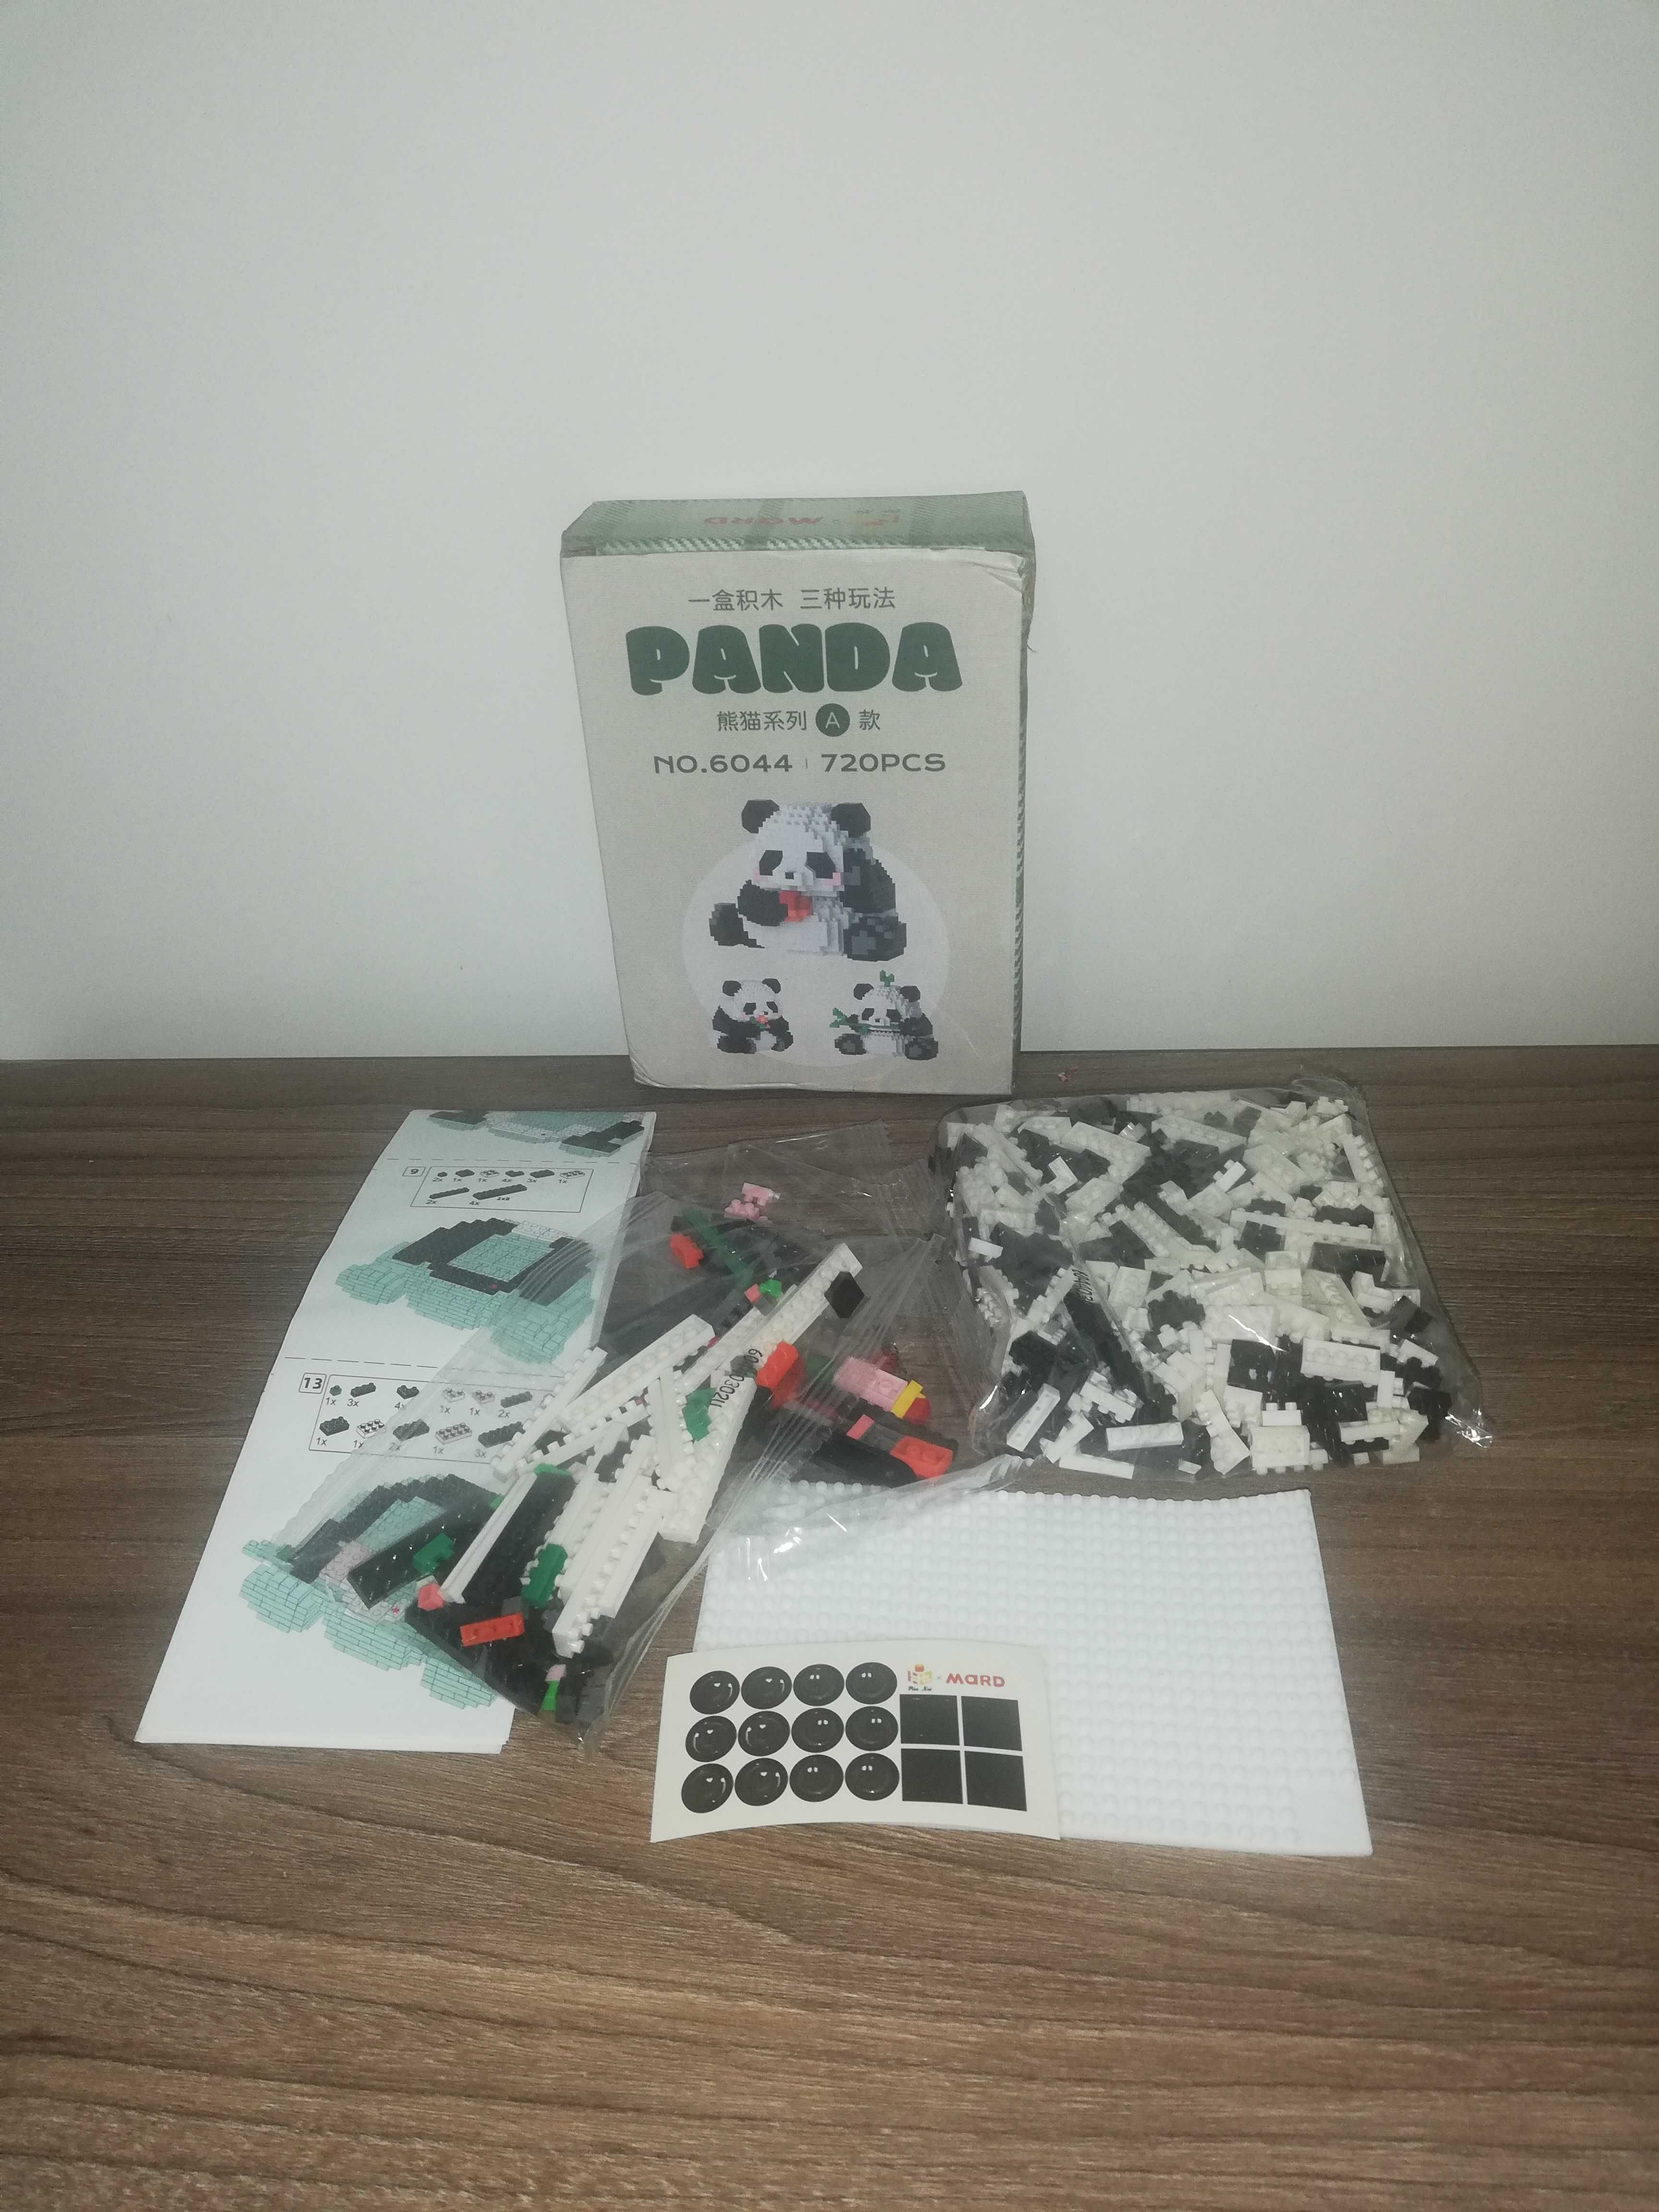 Klocki konstrukcyjnych mikronano bloków 3D Panda.